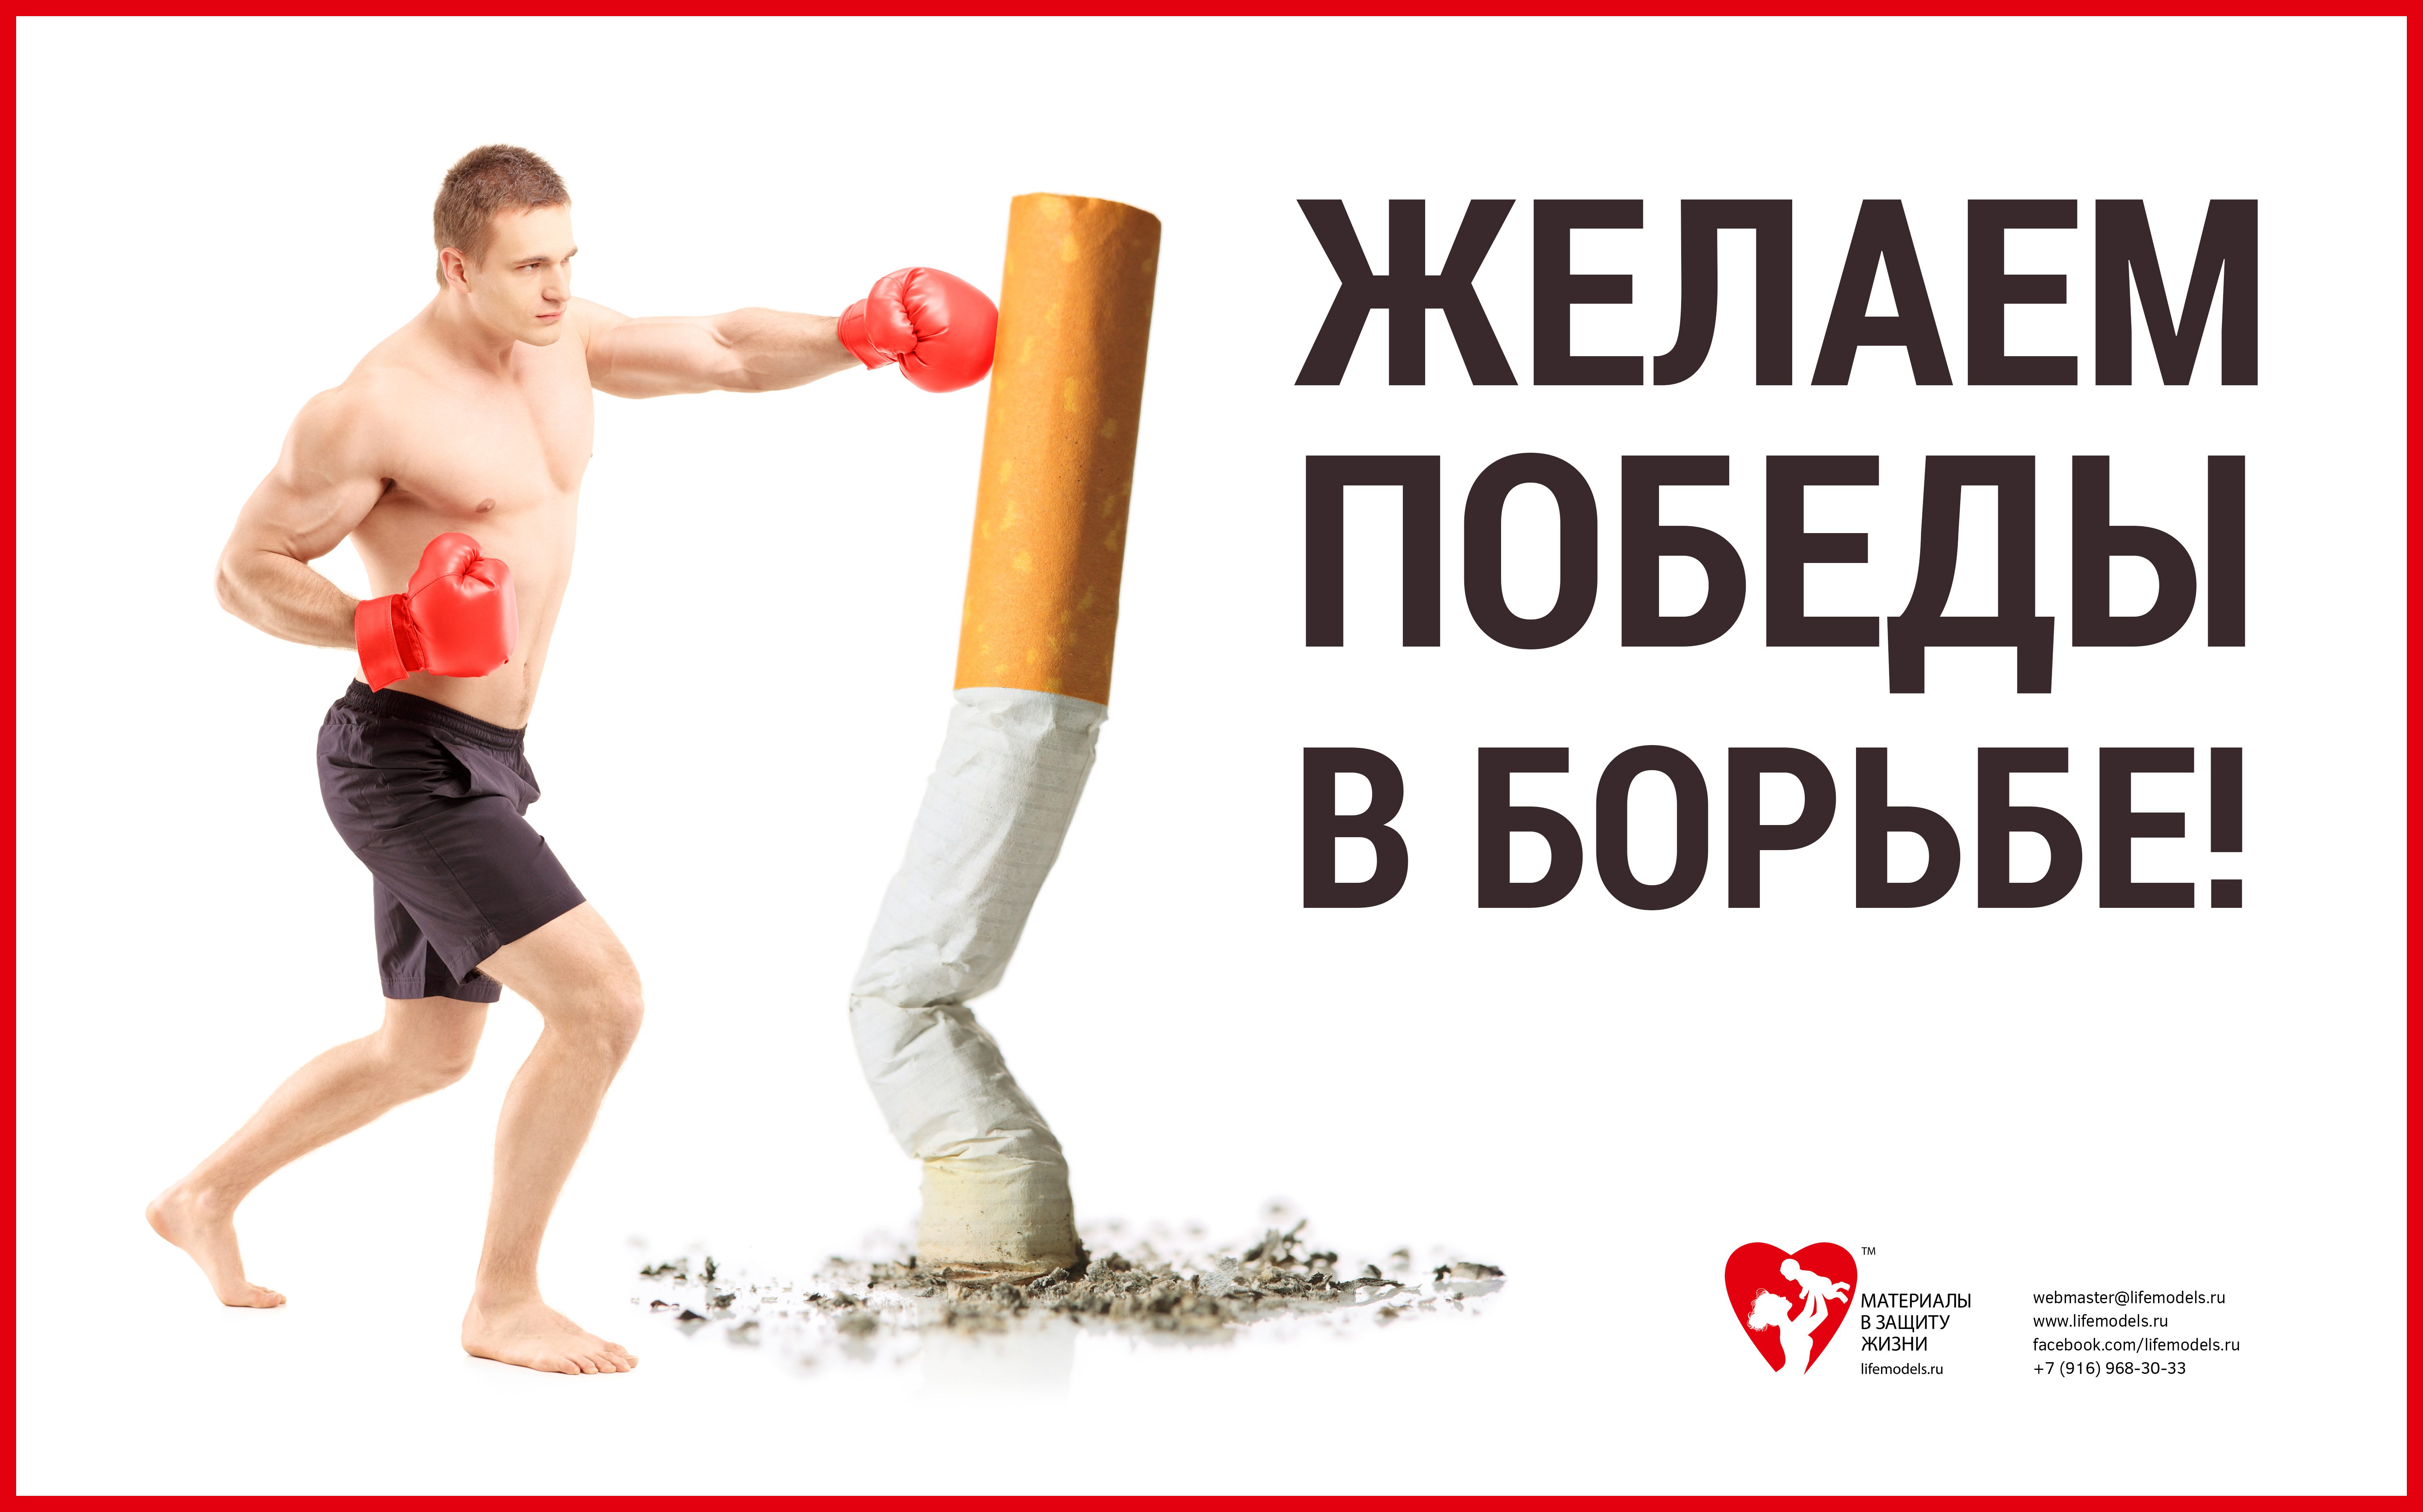 Против баннеров. Баннер против курения. Спорт против курения. Борьба против курения. Реклама борьба с курением.